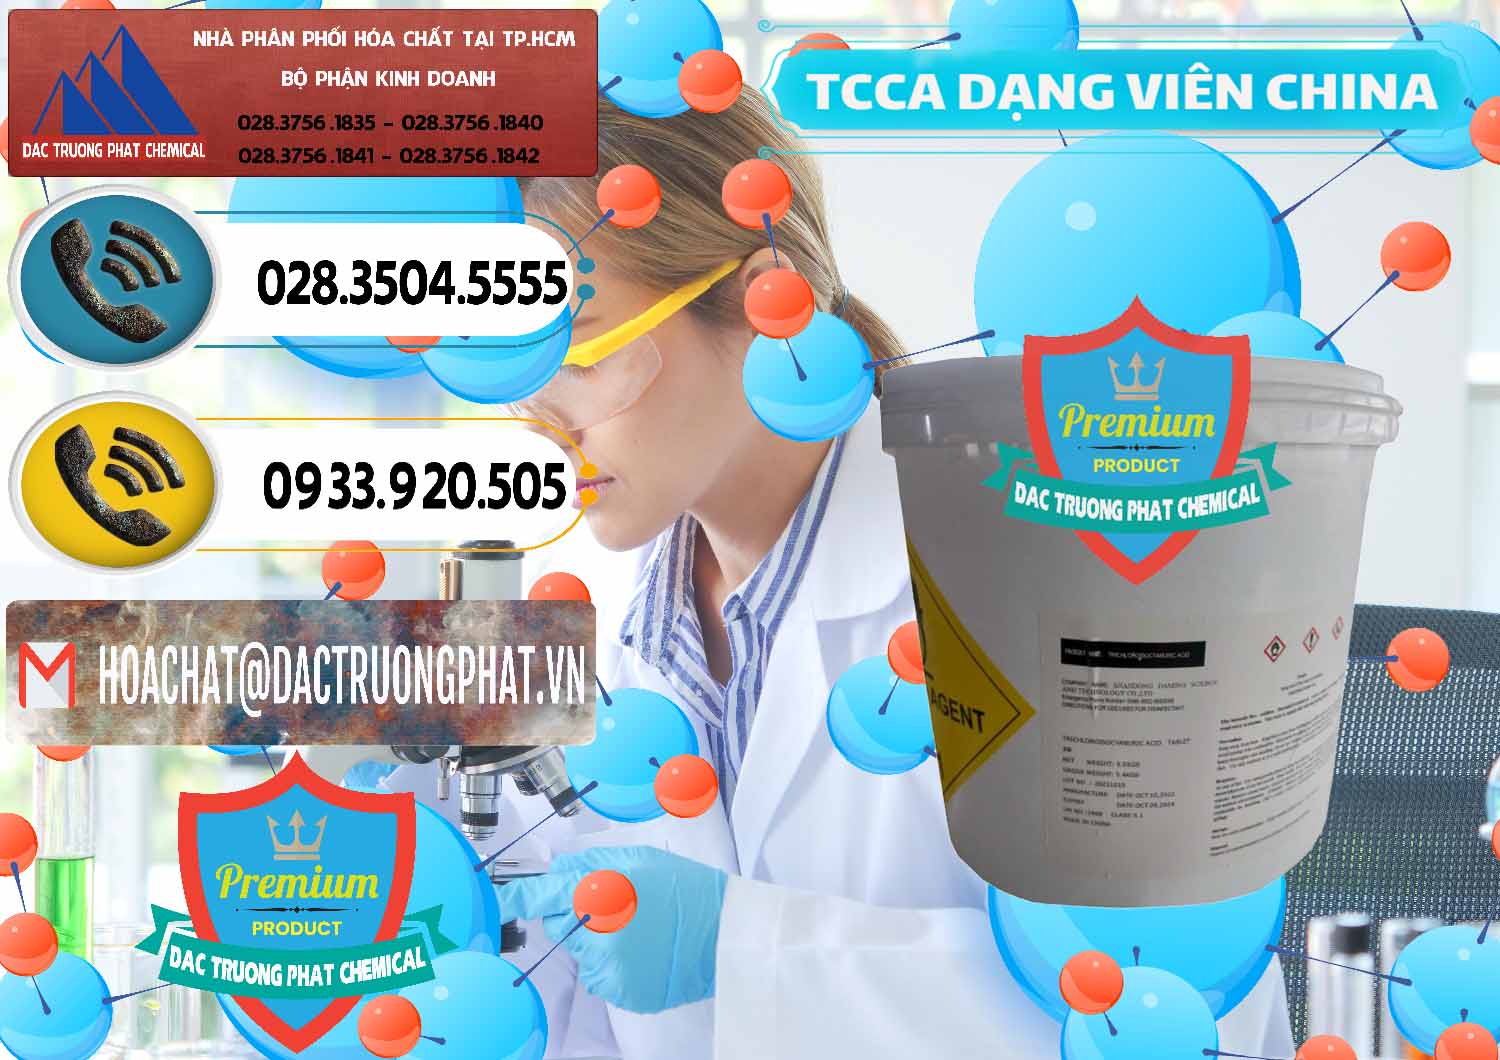 Chuyên nhập khẩu - bán TCCA - Acid Trichloroisocyanuric Dạng Viên Thùng 5kg Trung Quốc China - 0379 - Nơi chuyên cung ứng _ phân phối hóa chất tại TP.HCM - hoachatdetnhuom.vn